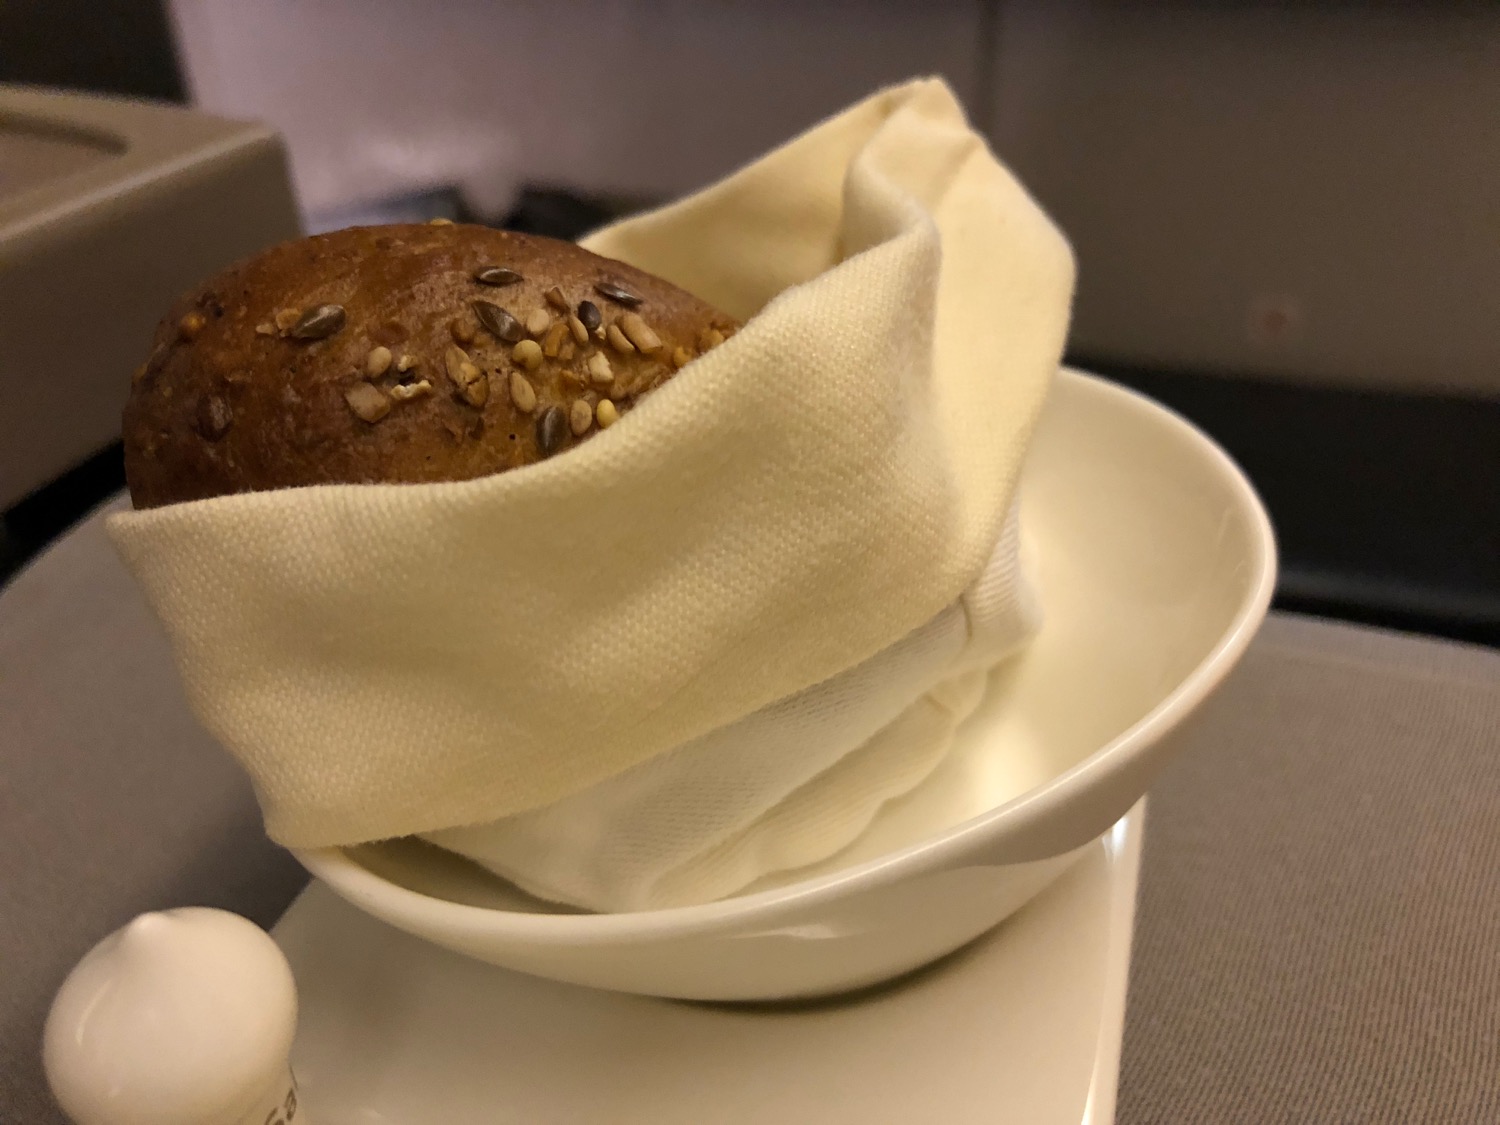 a bread in a white bowl